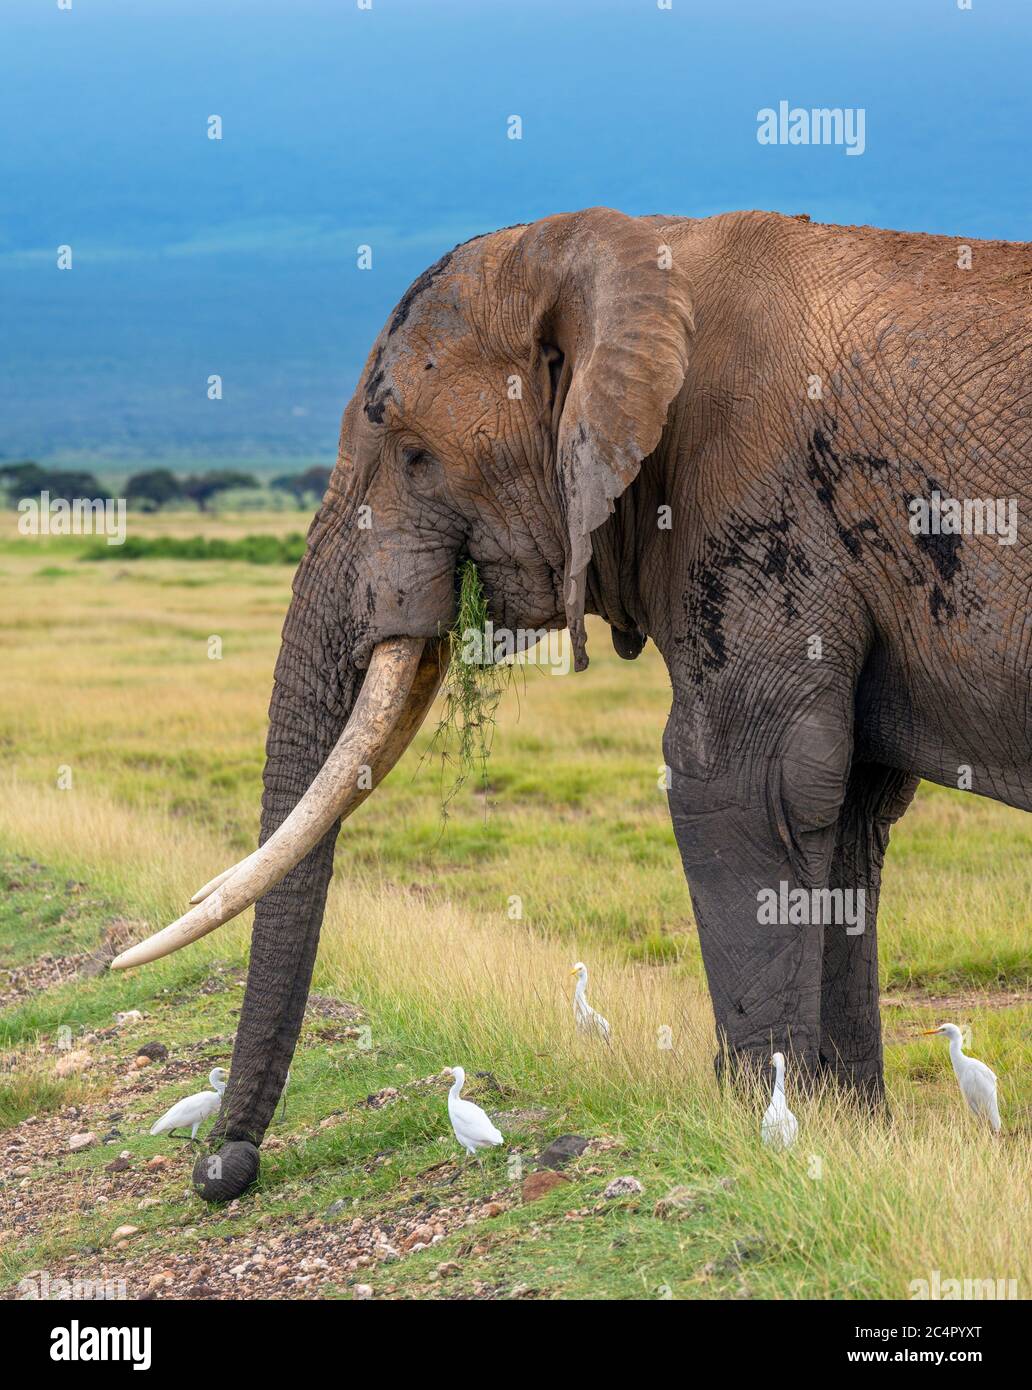 Elefante arbusto africano (Loxodonta africana) apacentando mientras está rodeado de garcetas, Parque Nacional Amboseli, Kenya, África Foto de stock